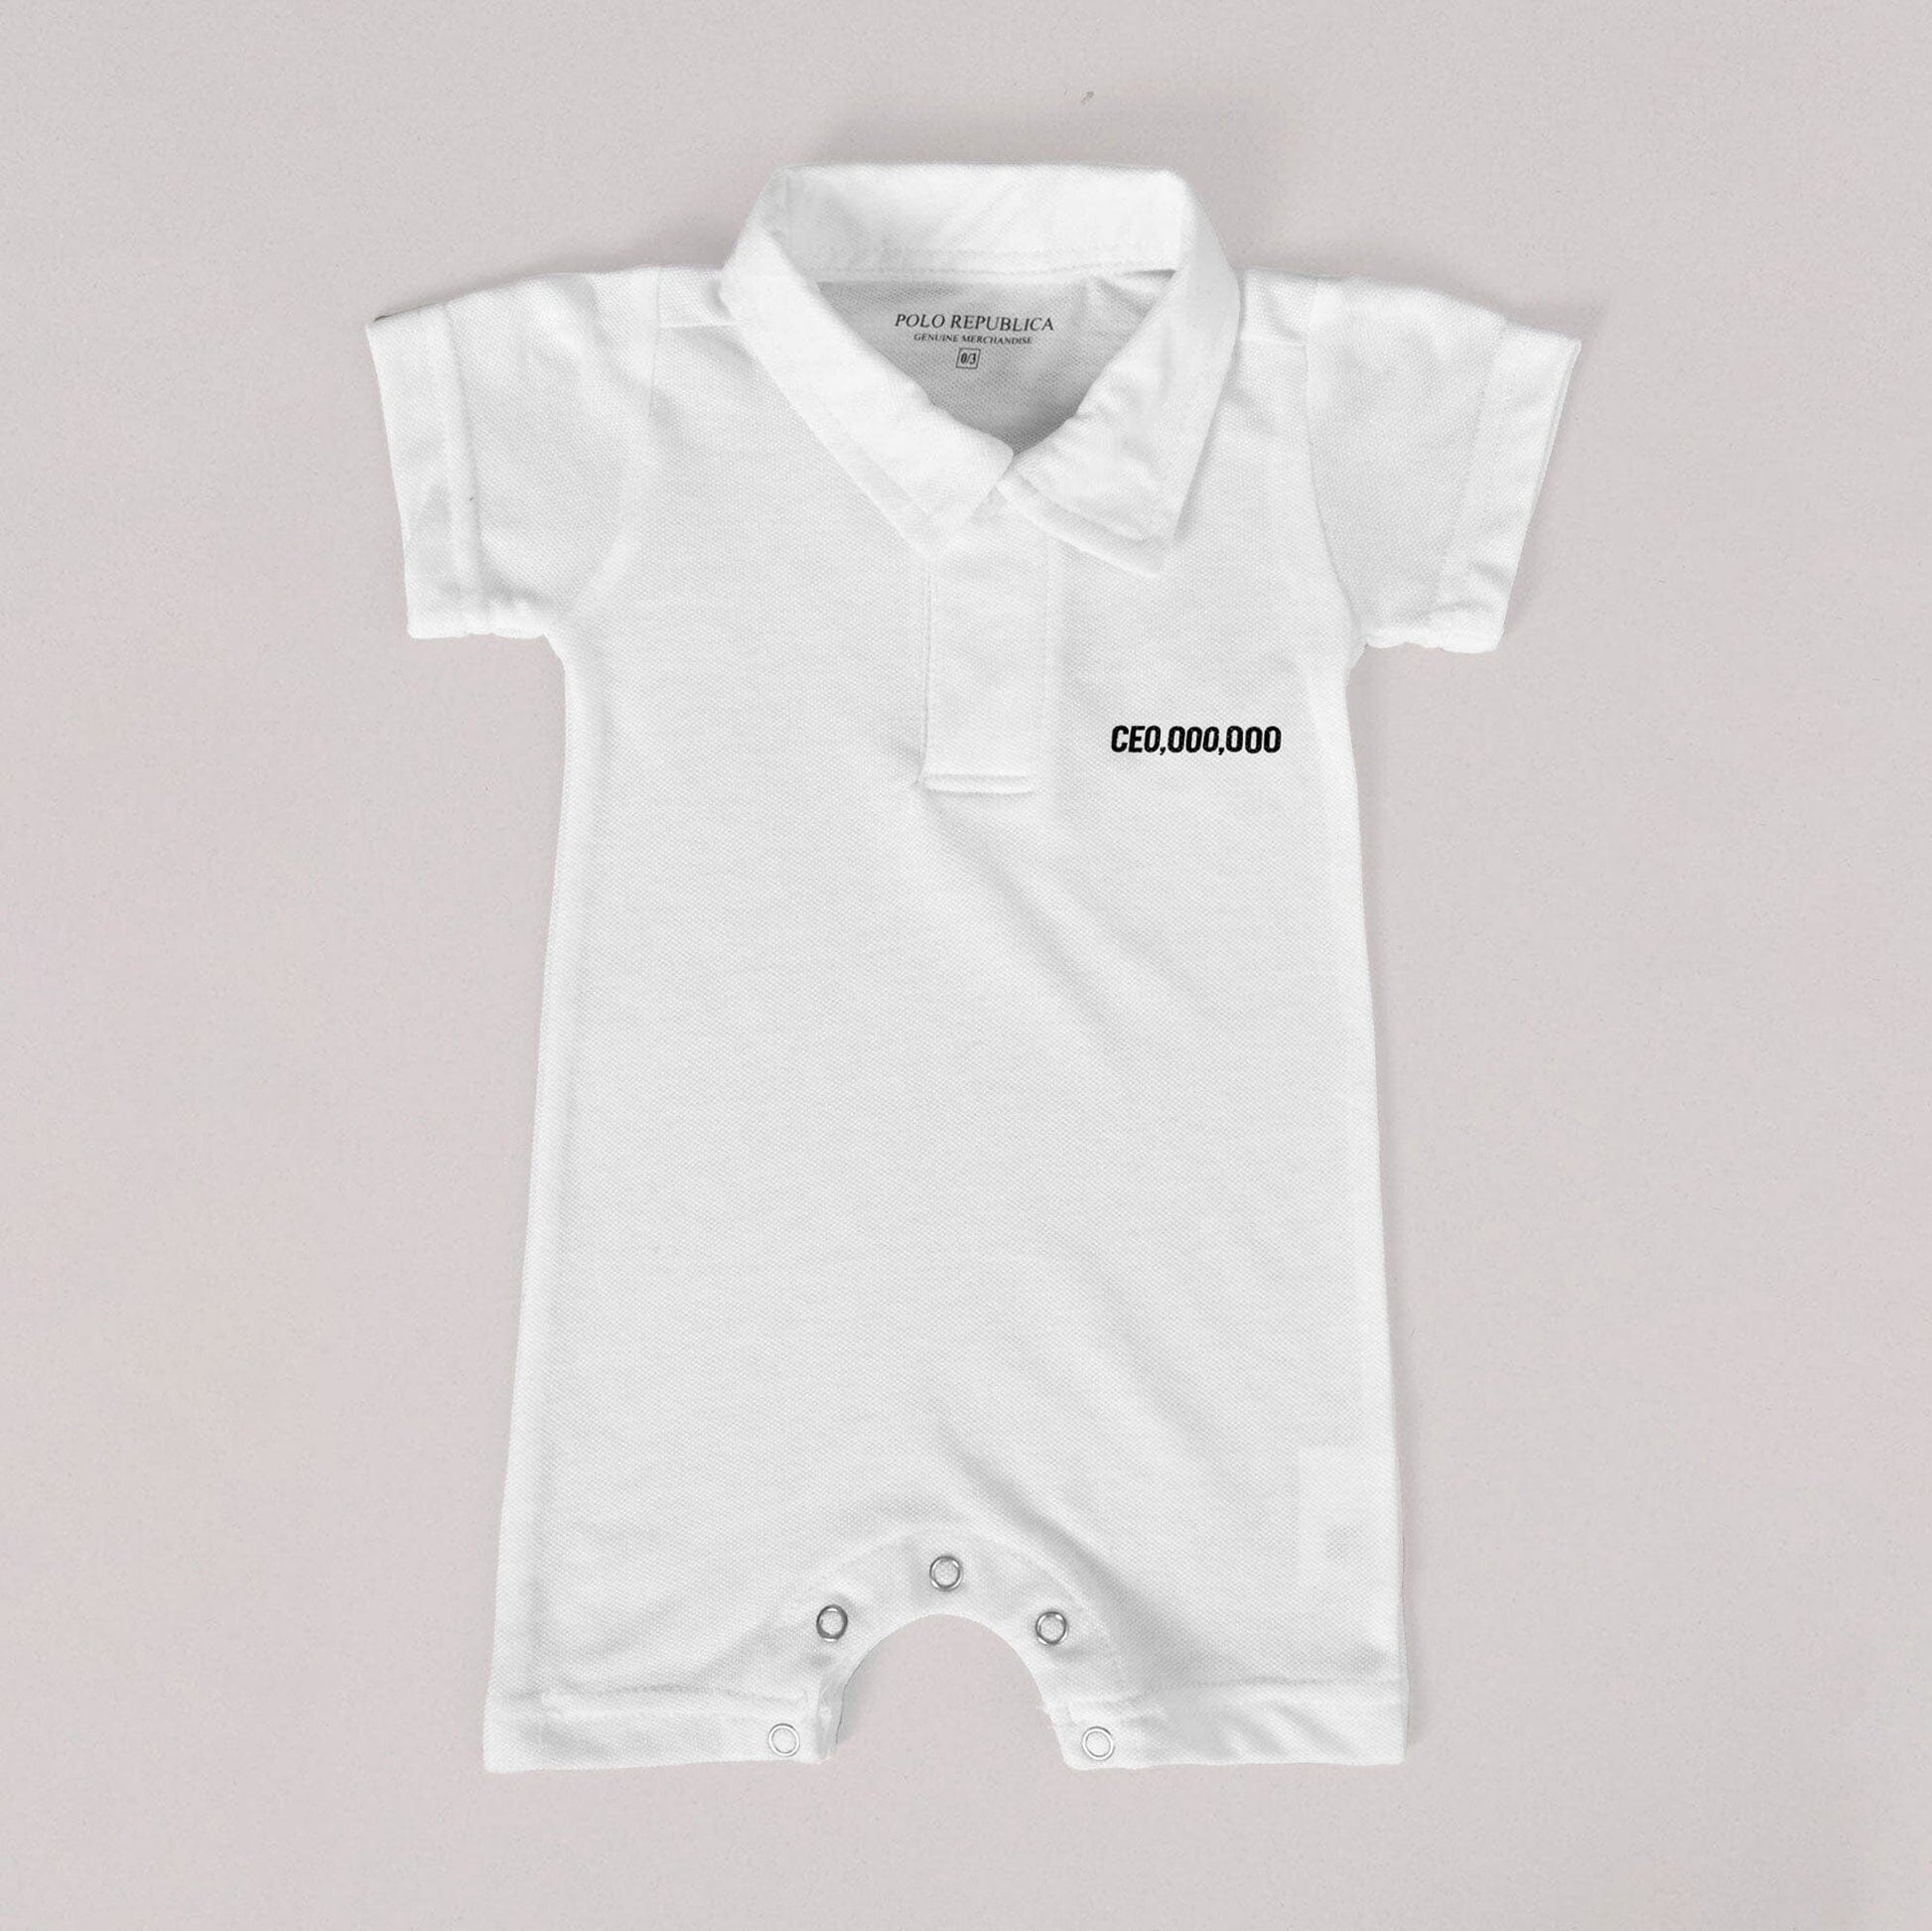 Polo Republica CEO Printed Baby Romper